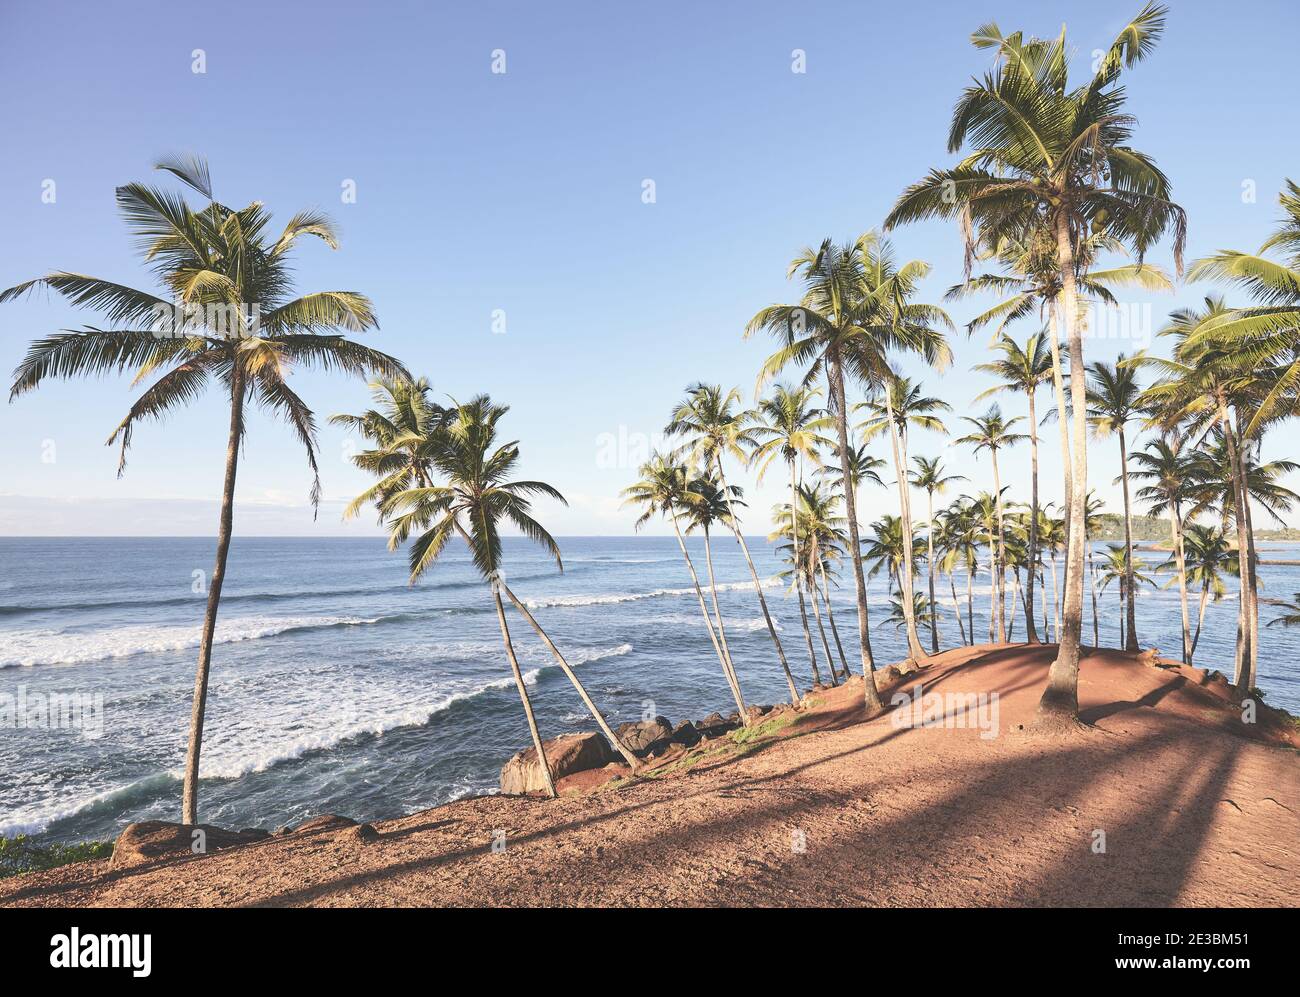 Spiaggia tropicale con palme da cocco al tramonto, immagine colorata. Foto Stock